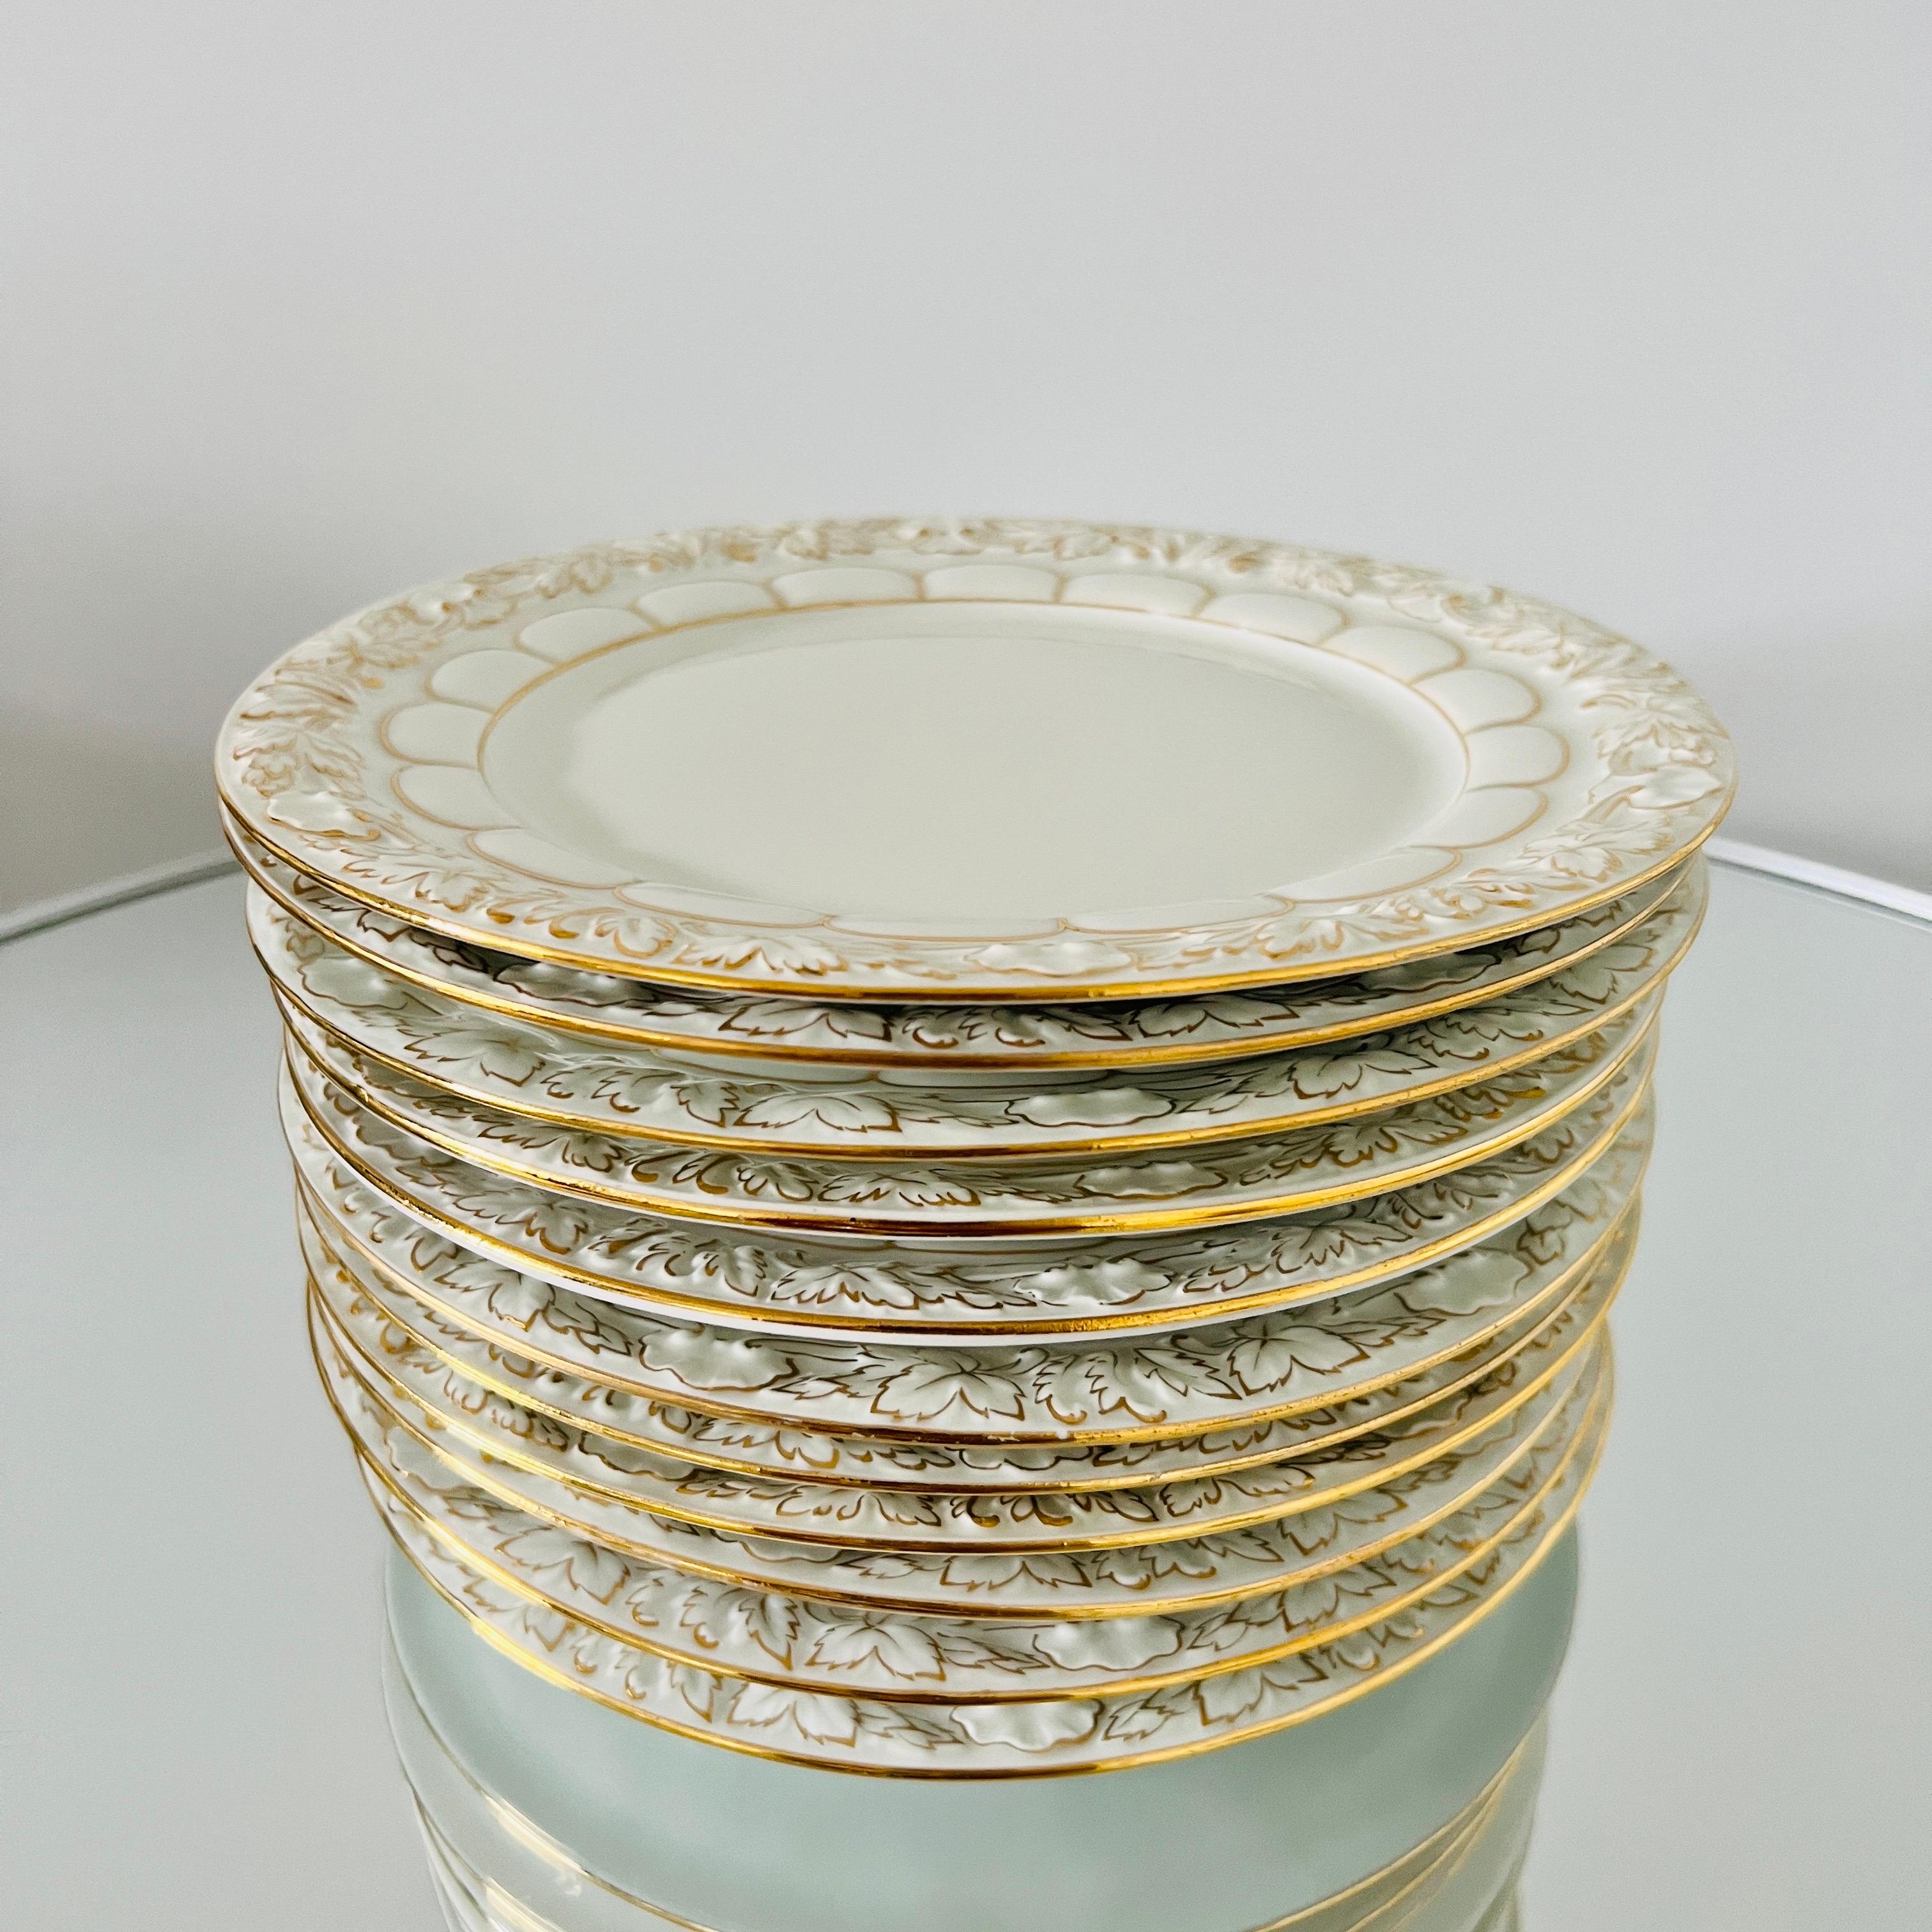 Ensemble de 11 assiettes à dessert en porcelaine de Meissen faites à la main, de la série opulente Golden Baroque.  Les assiettes sont recouvertes d'une glaçure blanche et présentent des motifs ornementaux en relief, avec des feuilles de vigne et